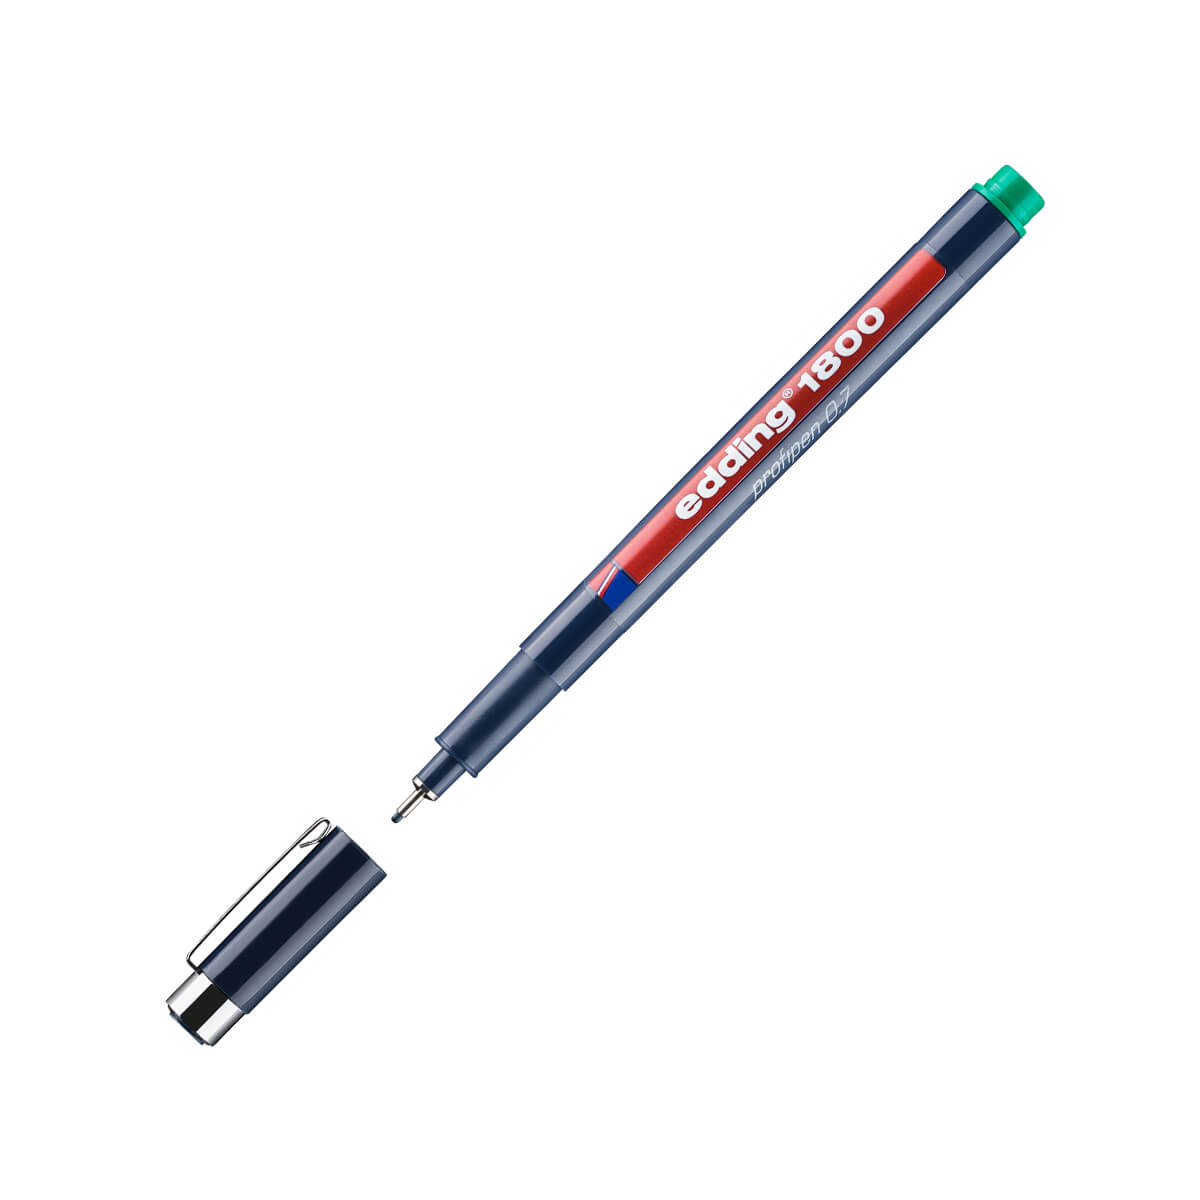 edding Fiber pen 1800 profipen 0.7mm green fineliner